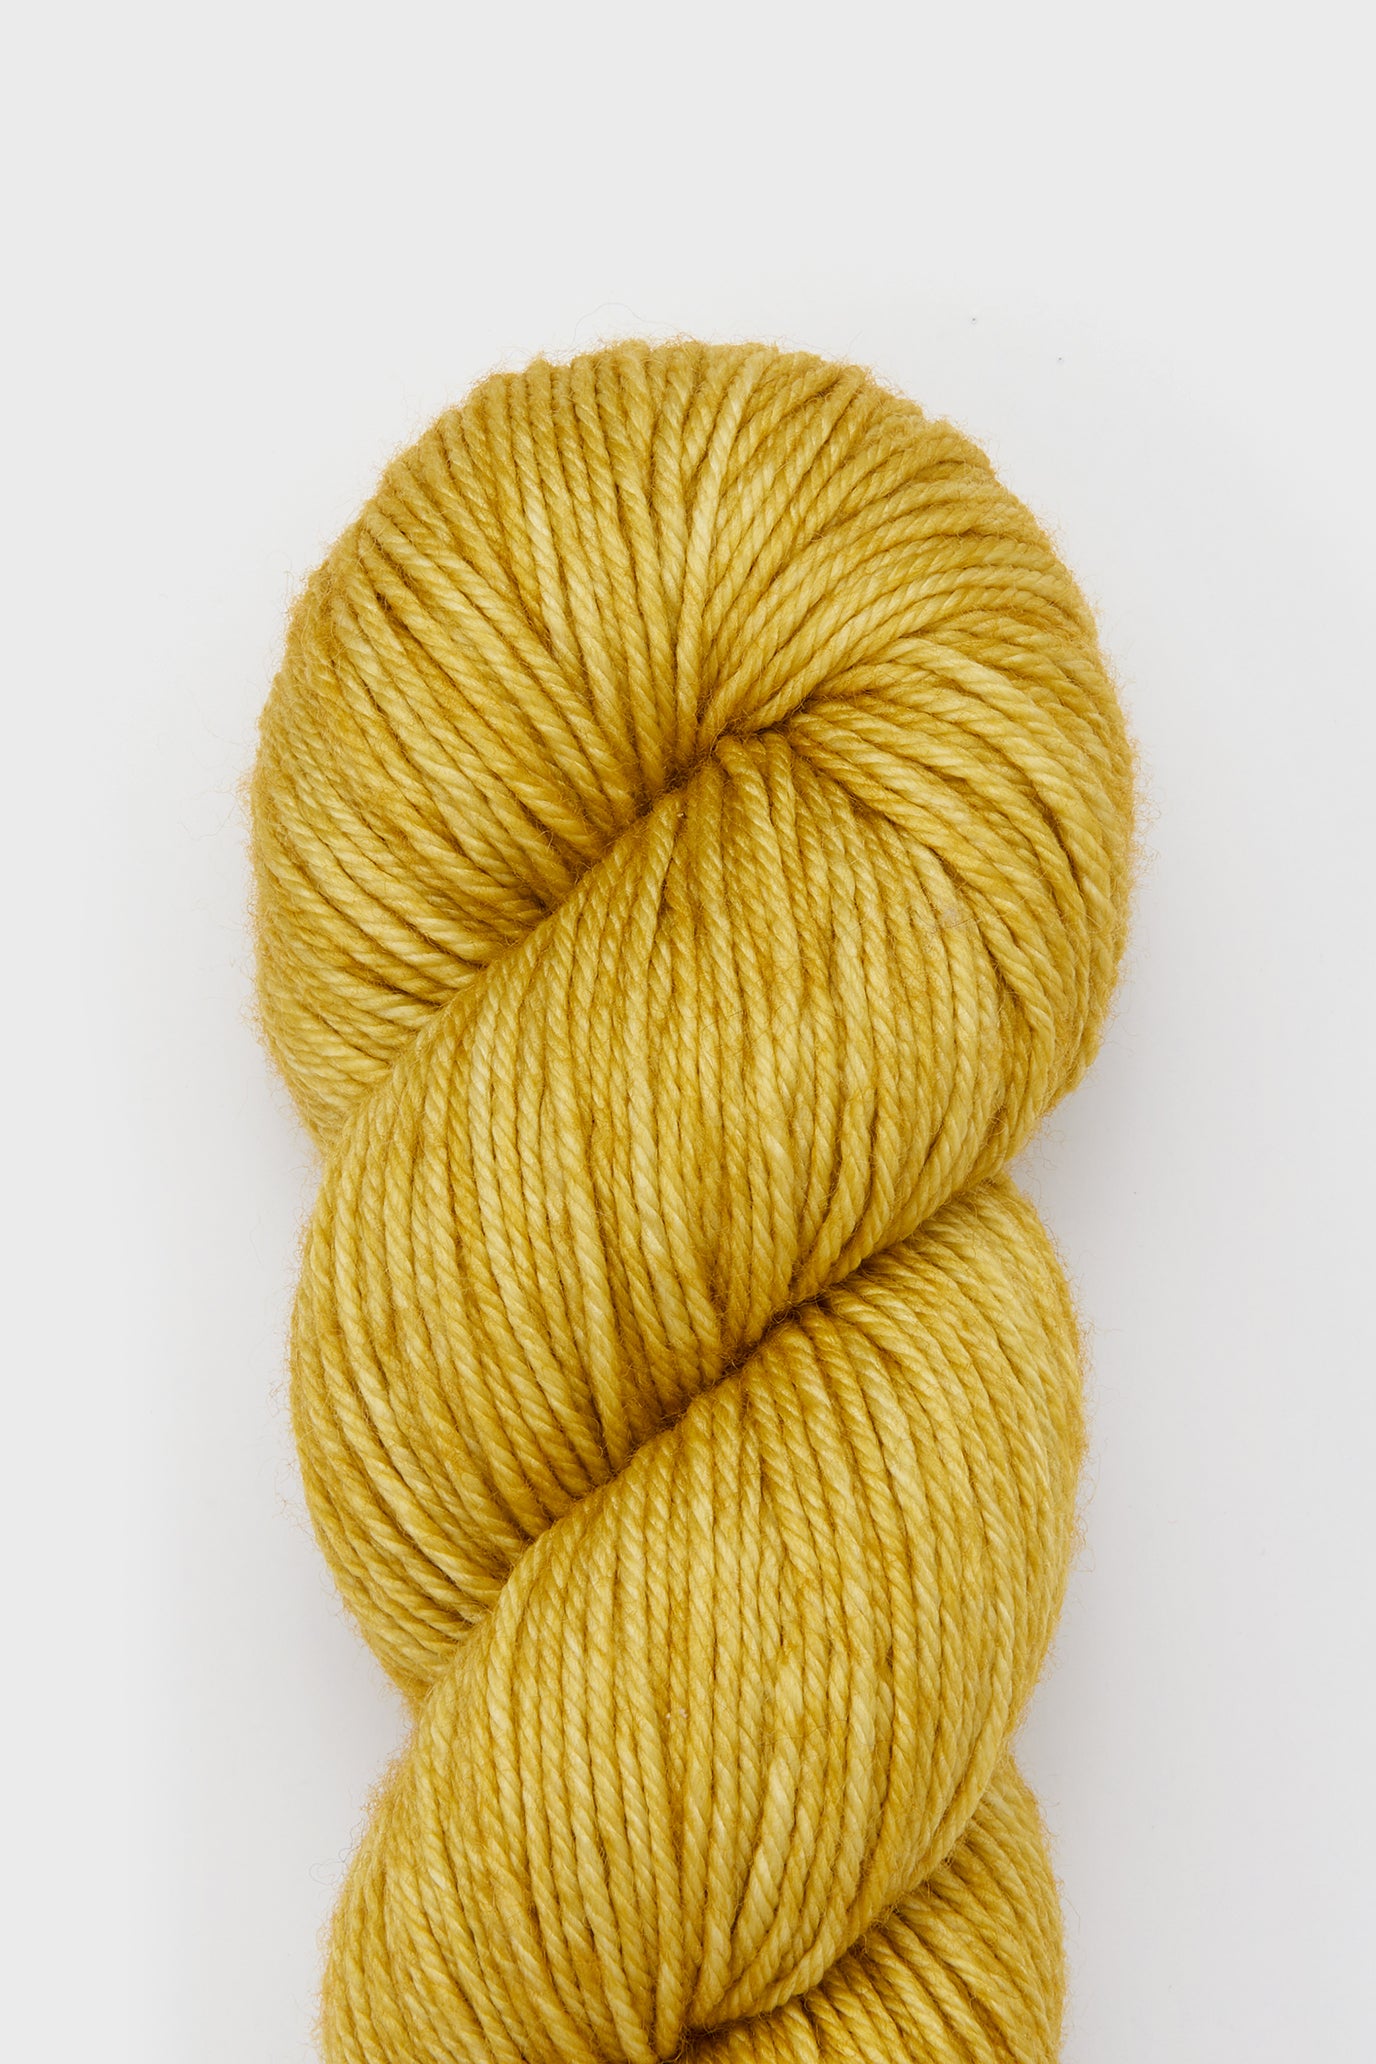 Yarn Skein - Winter Wheat